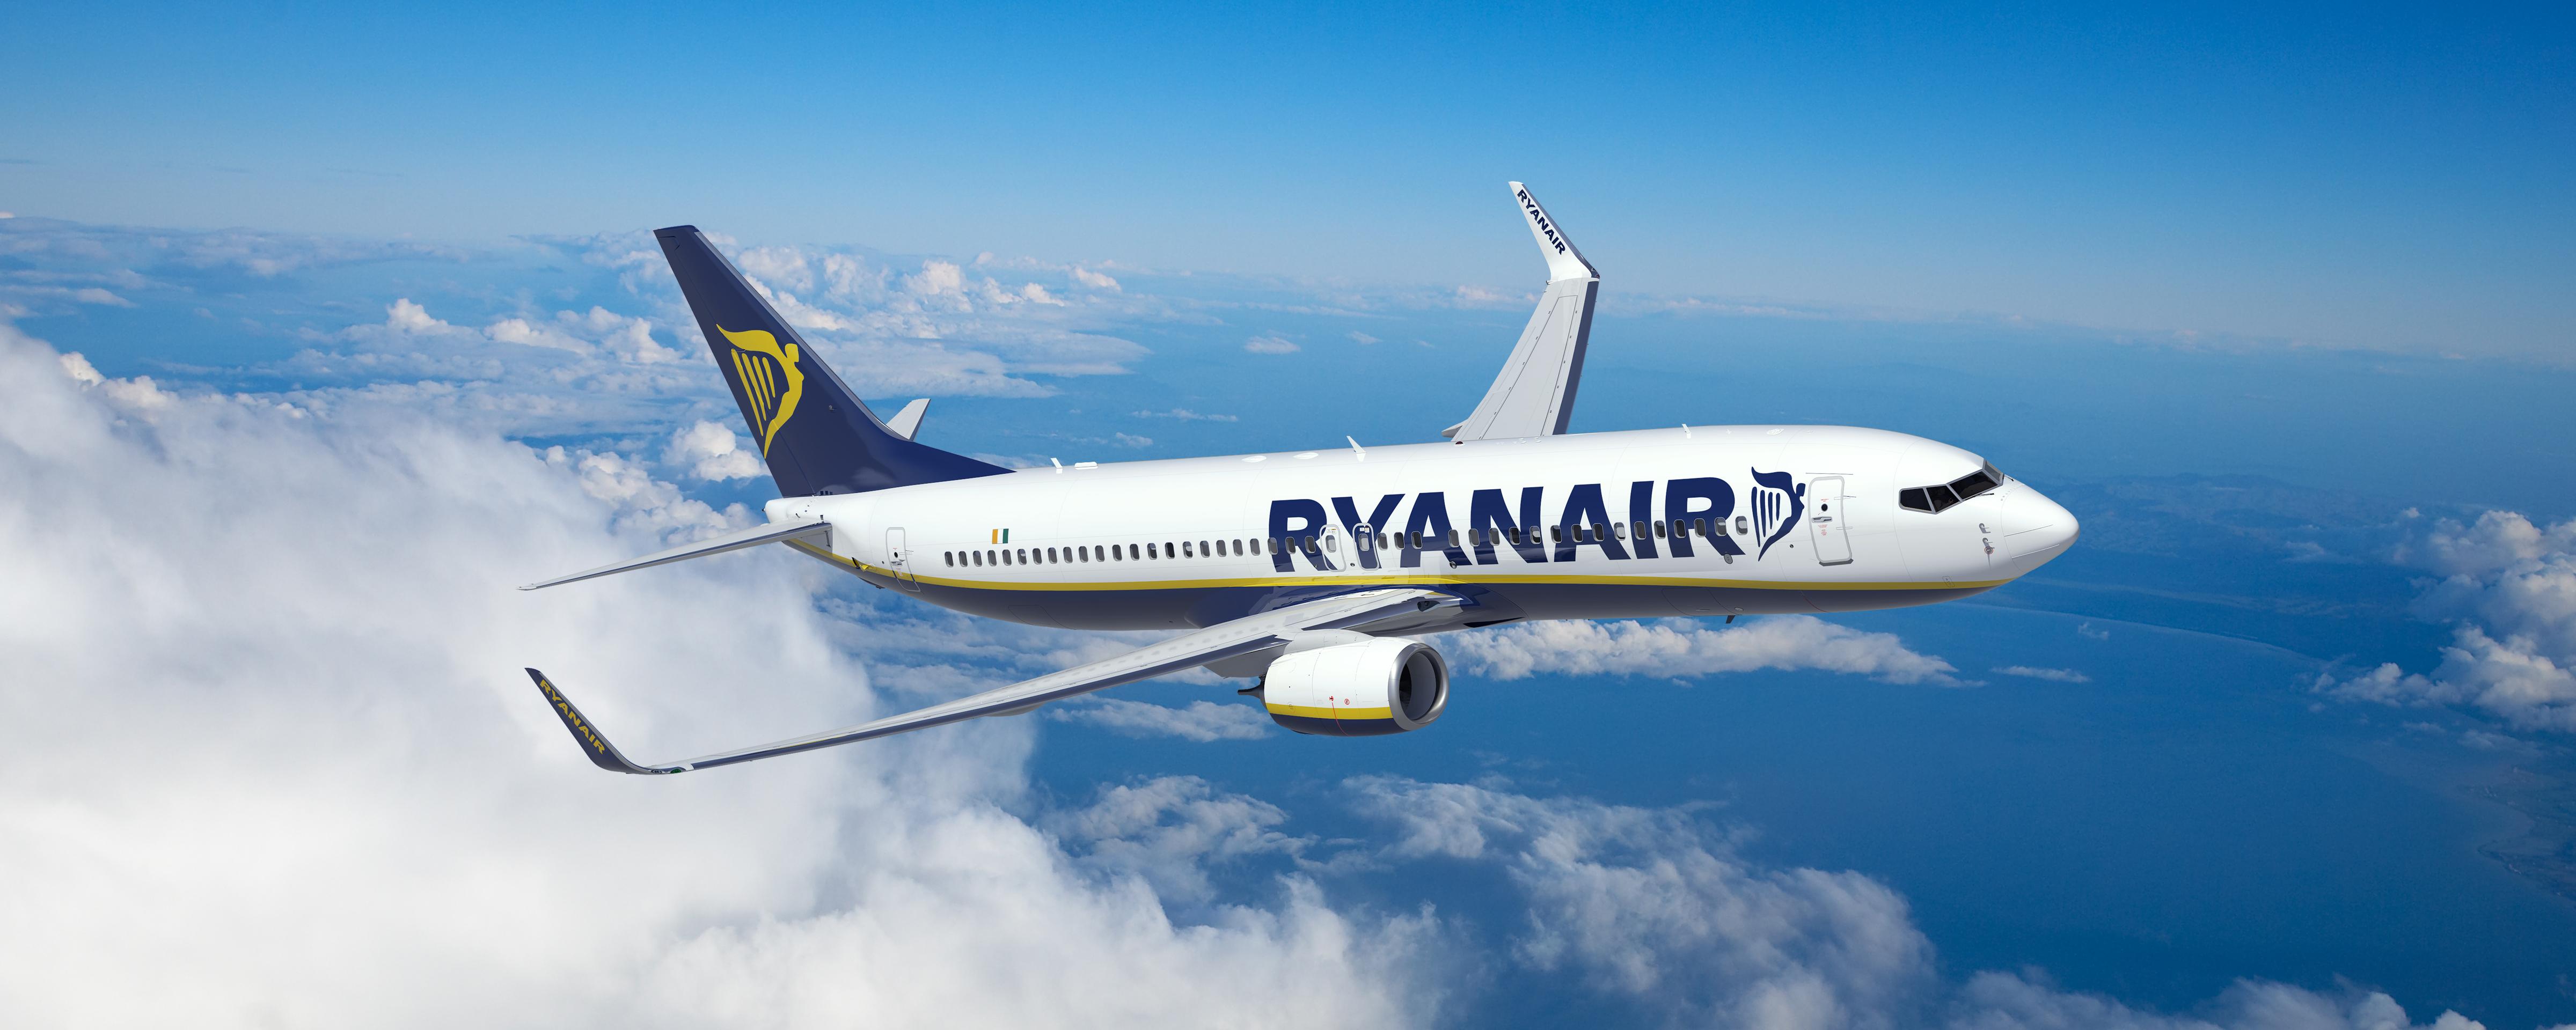 El Indice De Puntualidad De Ryanair Alcanza El 87% En Junio